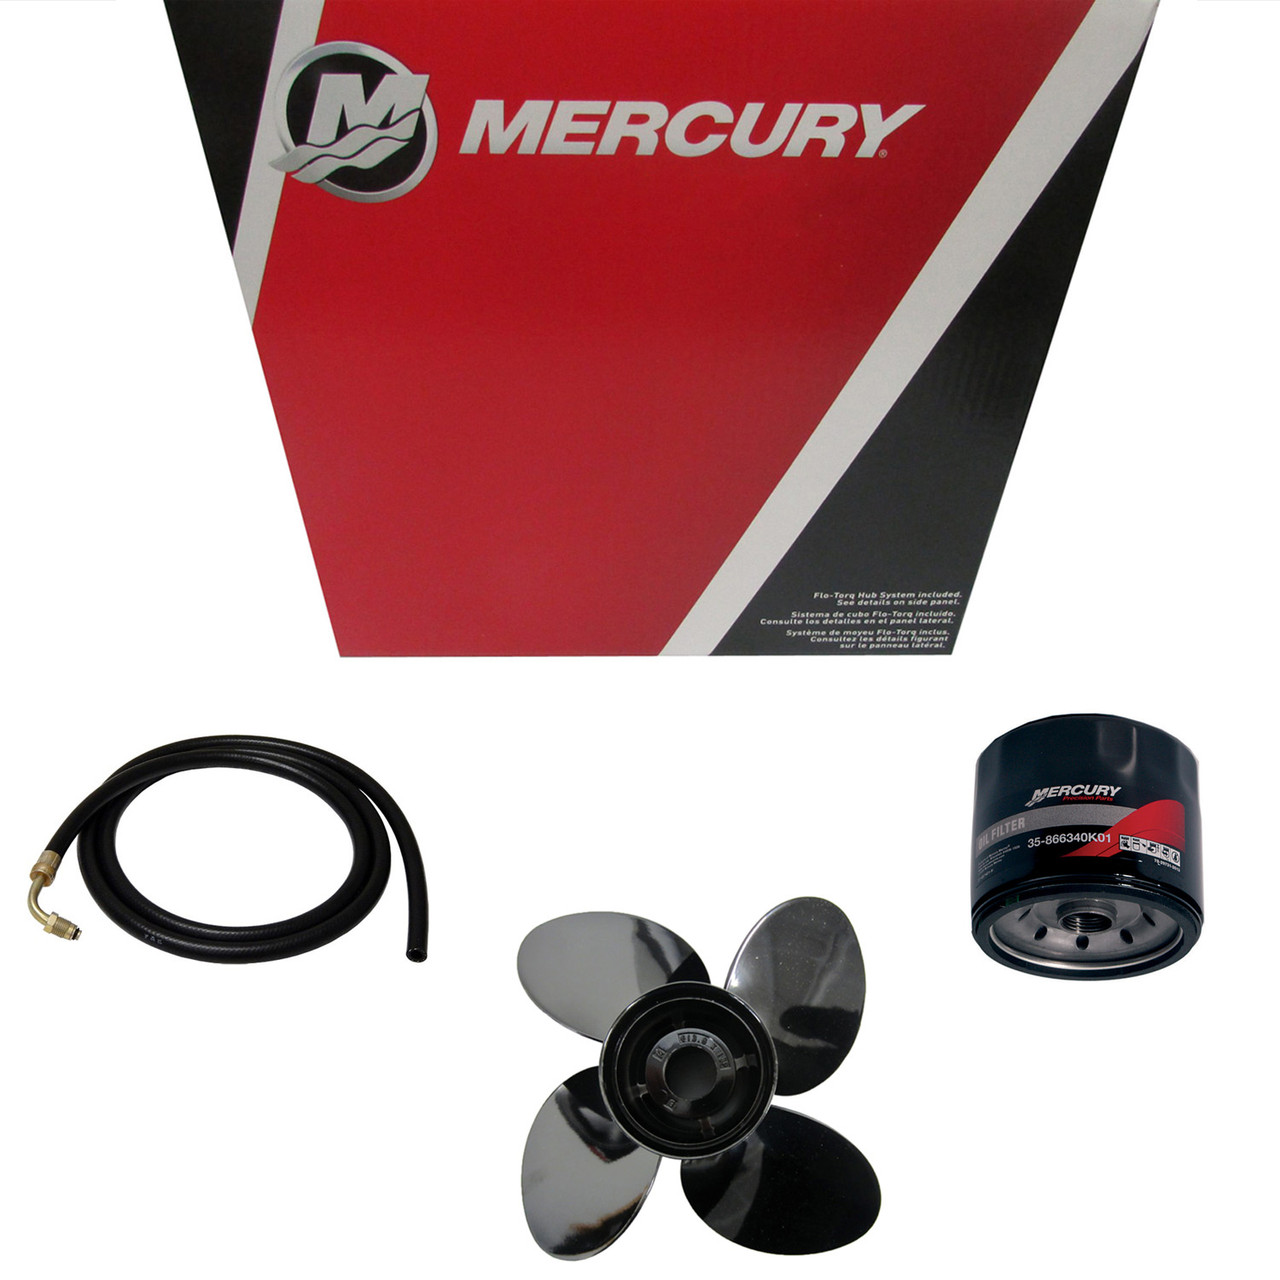 Mercury Marine / Mercruiser New OEM Enert Eco 16X17rh, 48-8M0151251